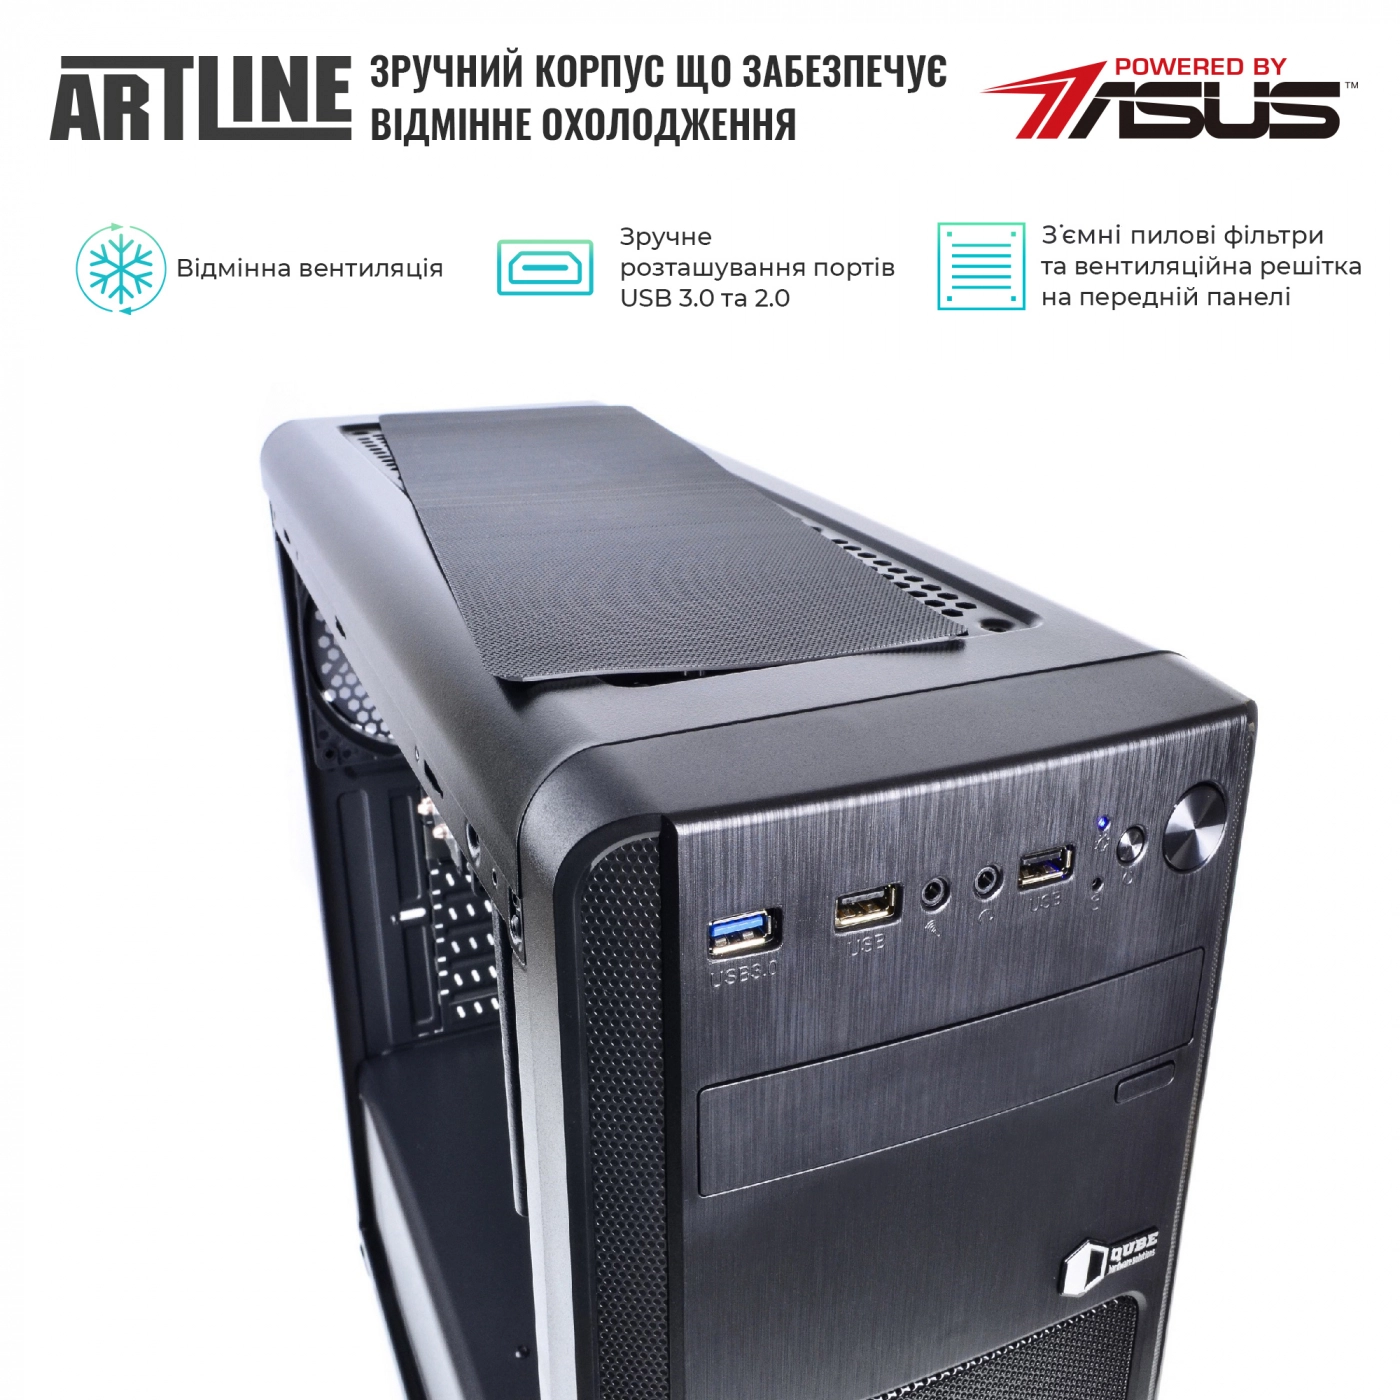 Купить Сервер ARTLINE Business T63v09 - фото 2